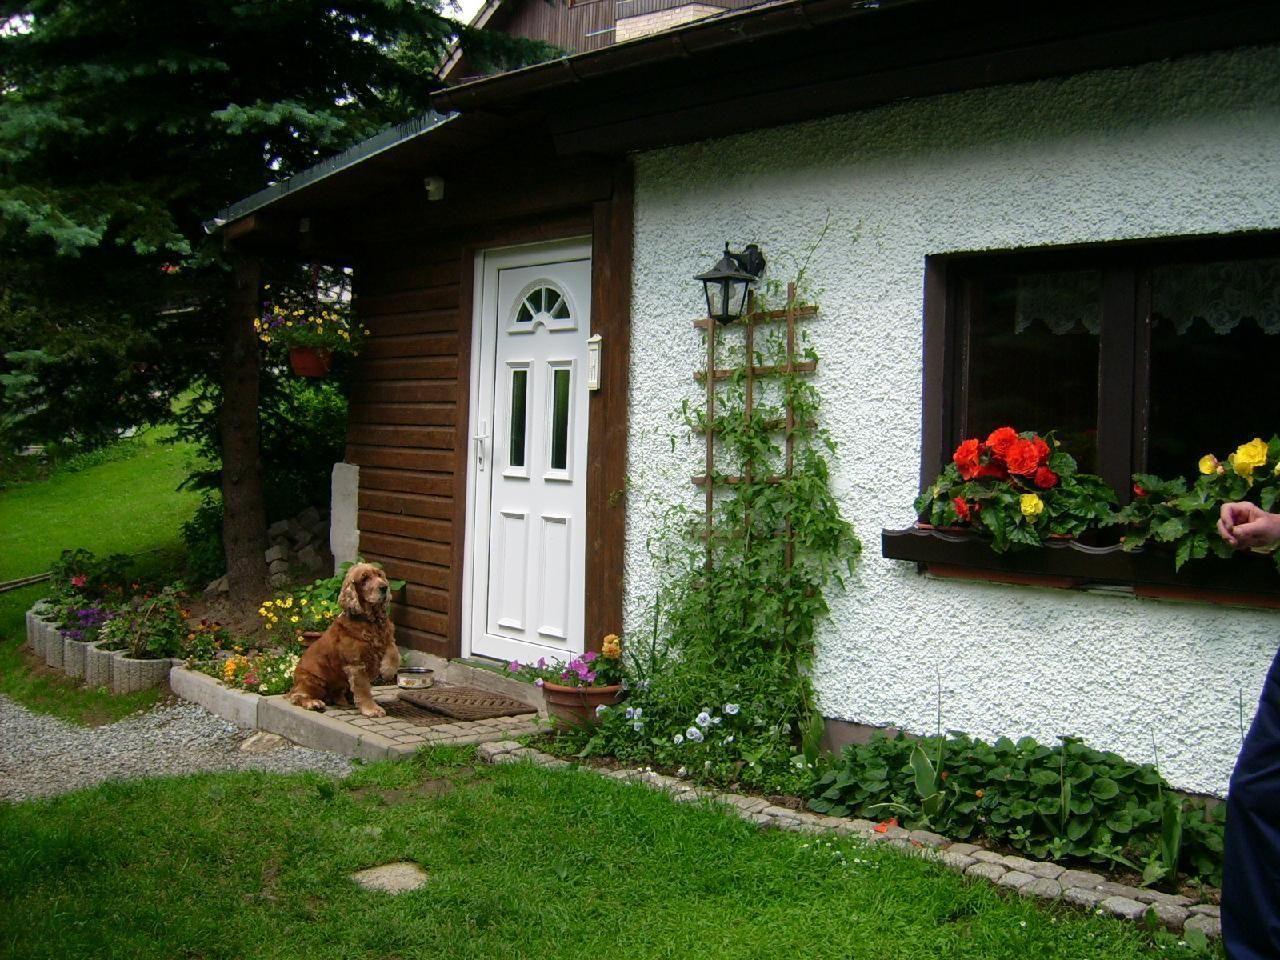 Ferienhaus in Kurort Oberwiesenthal mit Grill   Erzgebirge